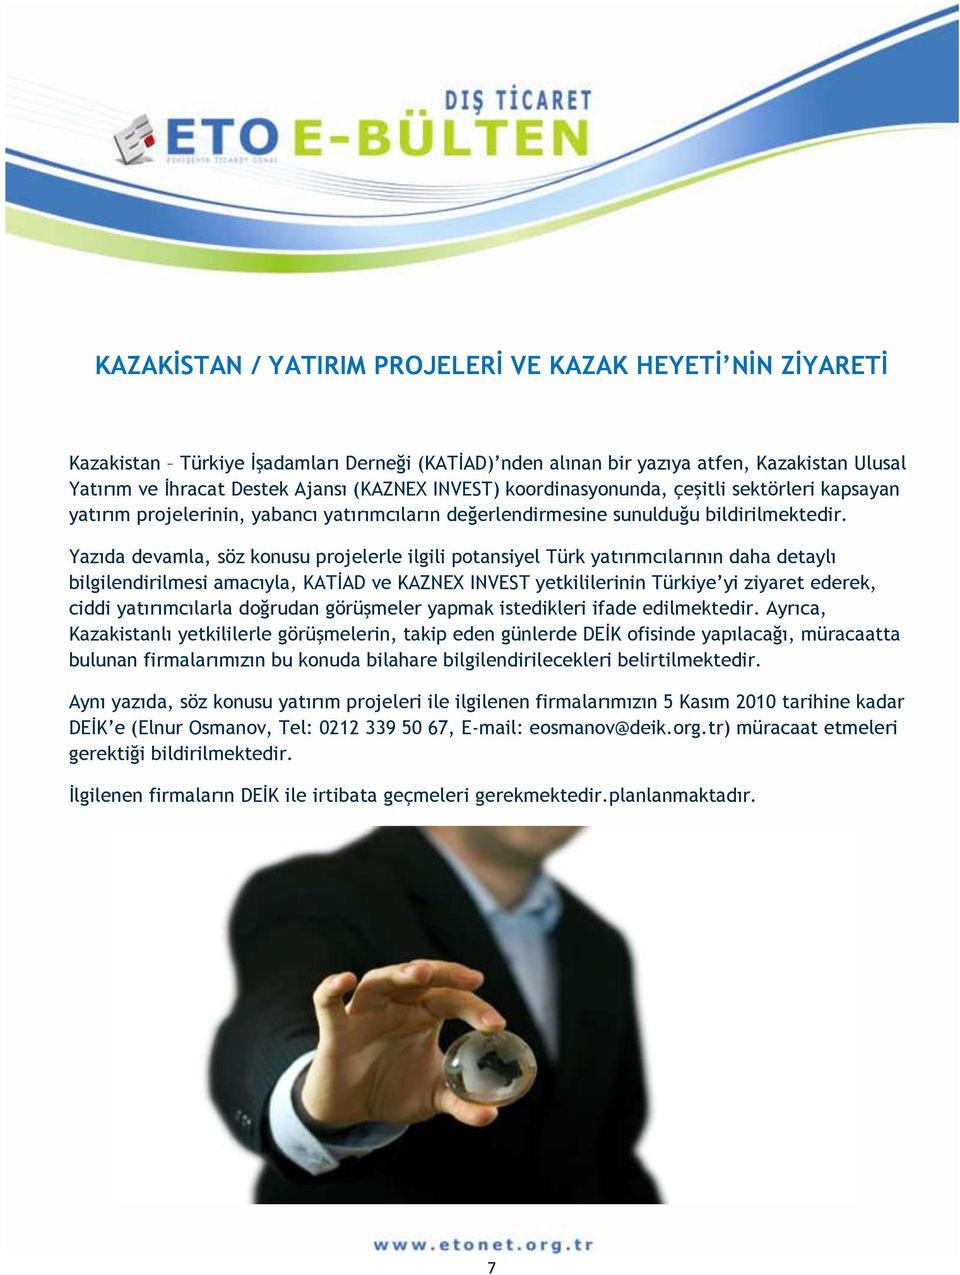 Yazıda devamla, söz konusu projelerle ilgili potansiyel Türk yatırımcılarının daha detaylı bilgilendirilmesi amacıyla, KATİAD ve KAZNEX INVEST yetkililerinin Türkiye yi ziyaret ederek, ciddi